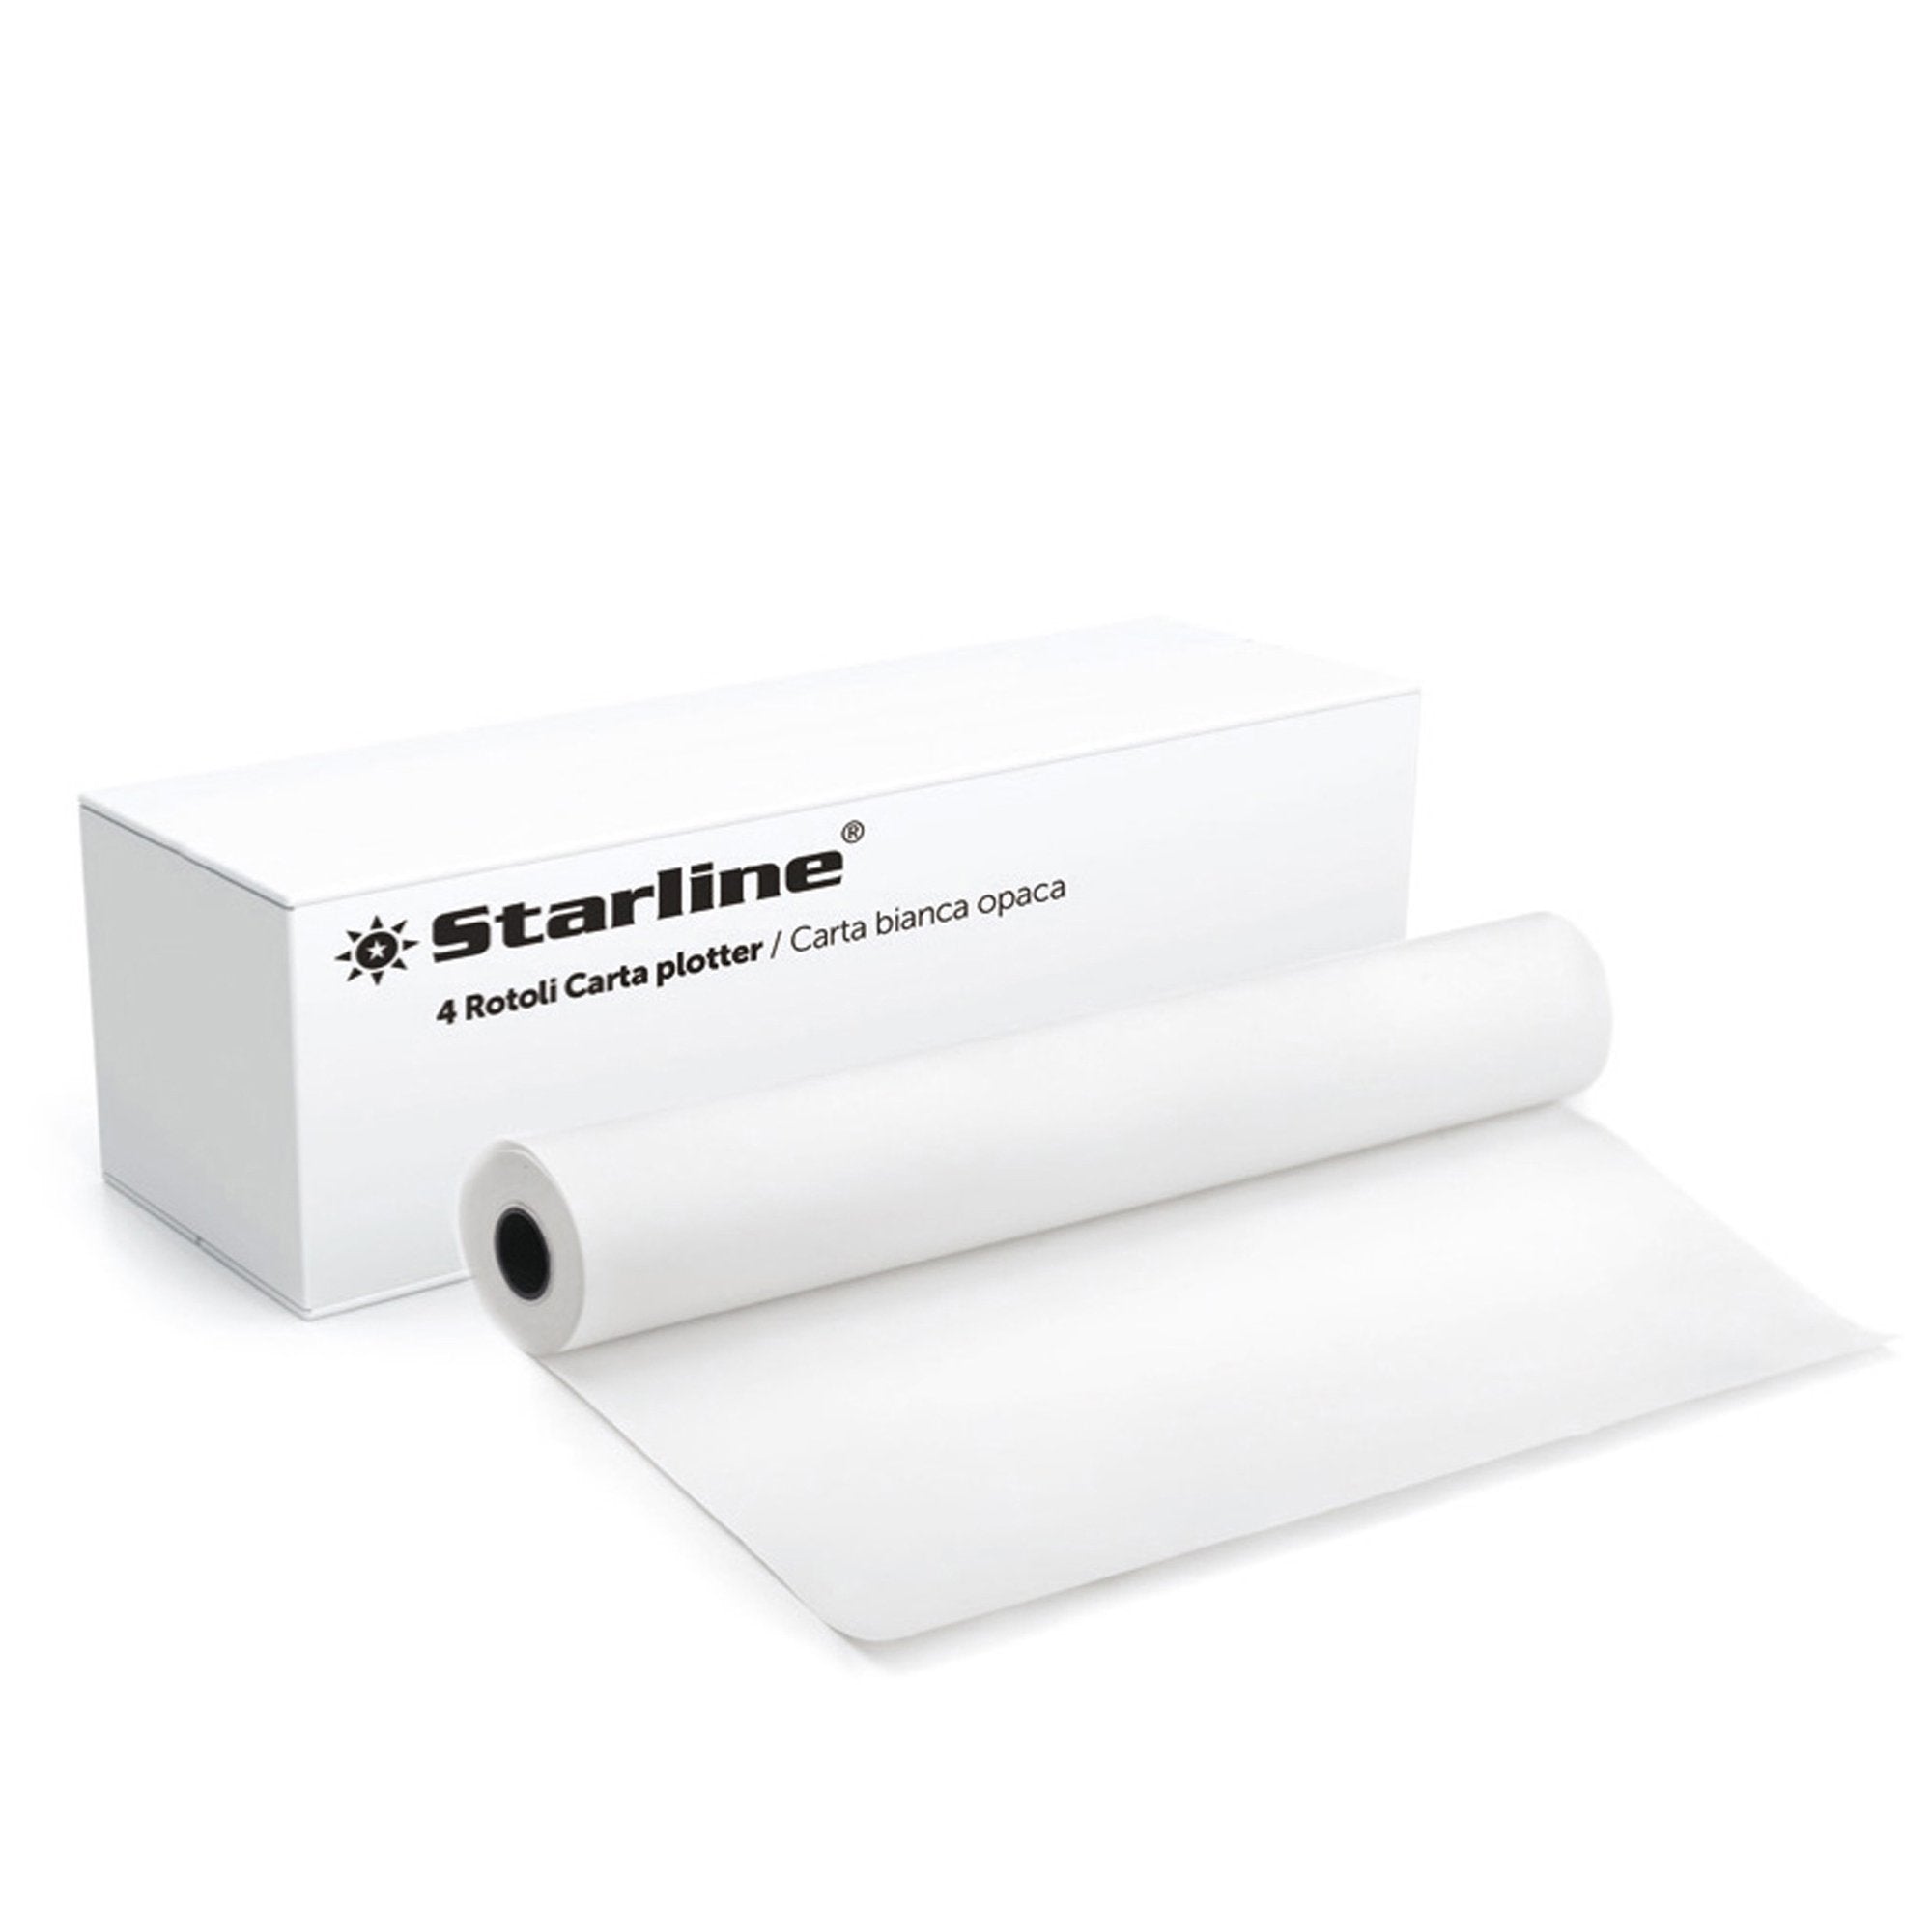 starline-carta-plotter-610mm-x-50m-80gr-inkjet